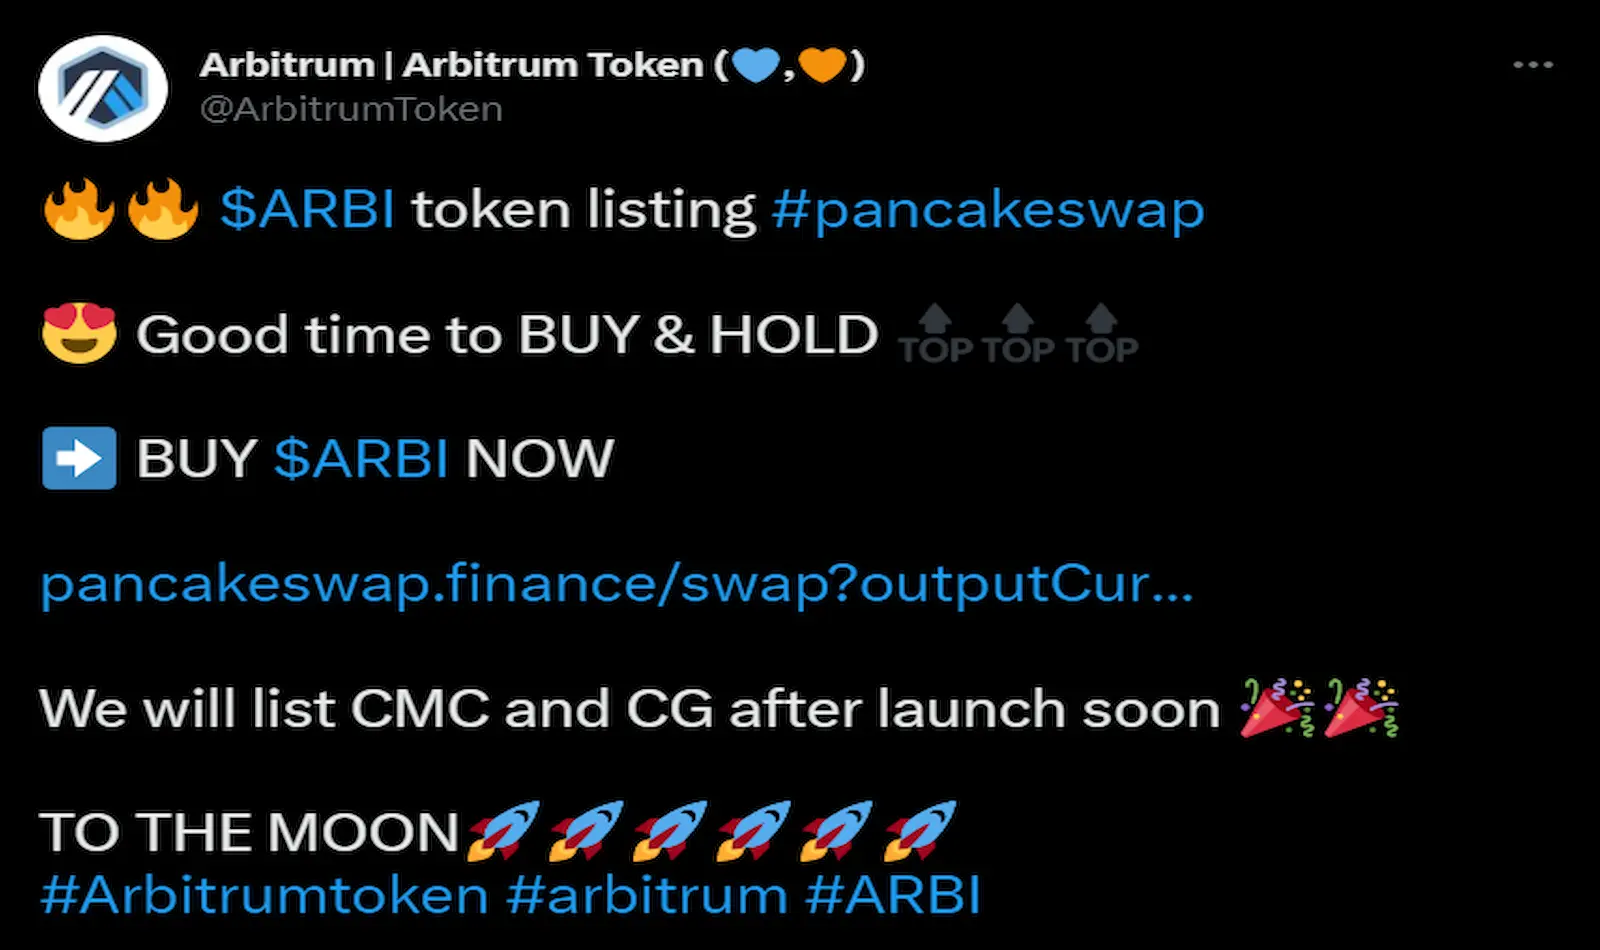 Arbitrum shared the ARBI token listing announcement on Twitter.